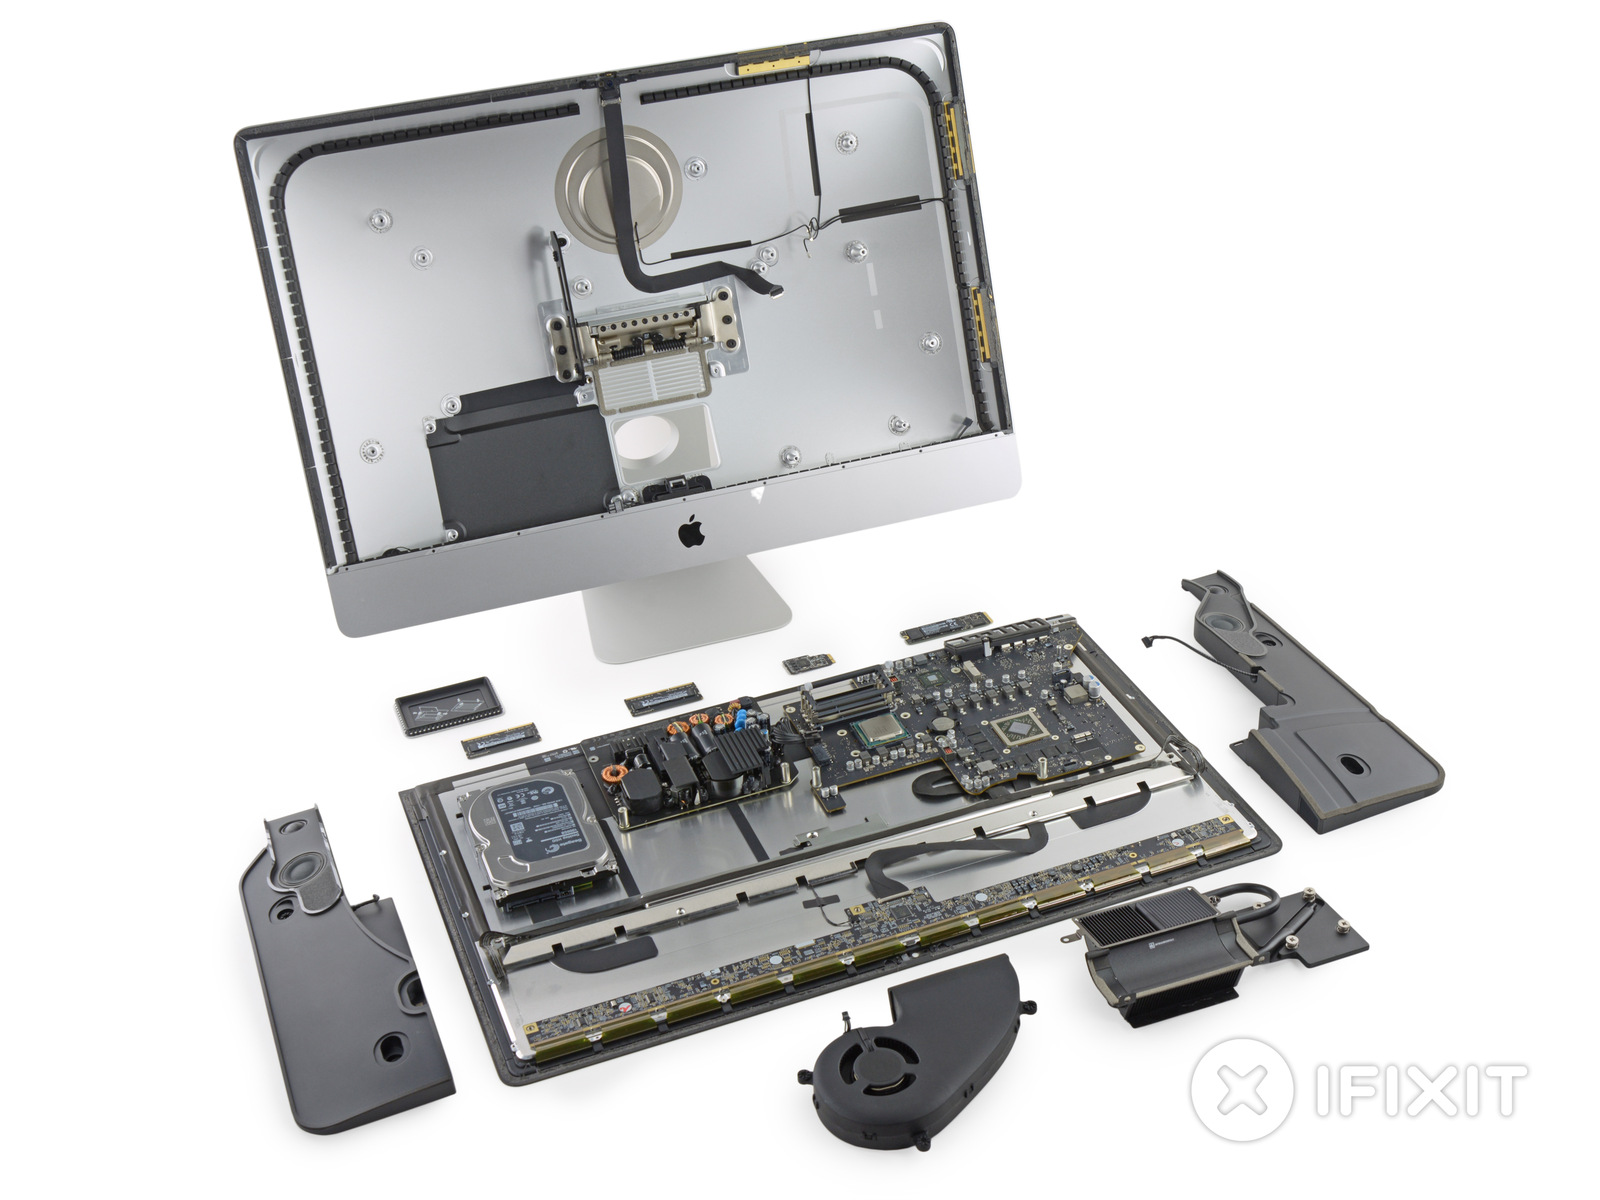 Immagine pubblicata in relazione al seguente contenuto: Le foto di un iMac di Apple con display Retina 5K disassemblato | Nome immagine: news21797_iMac-Intel-27-inch_Retina-5K_2.jpg